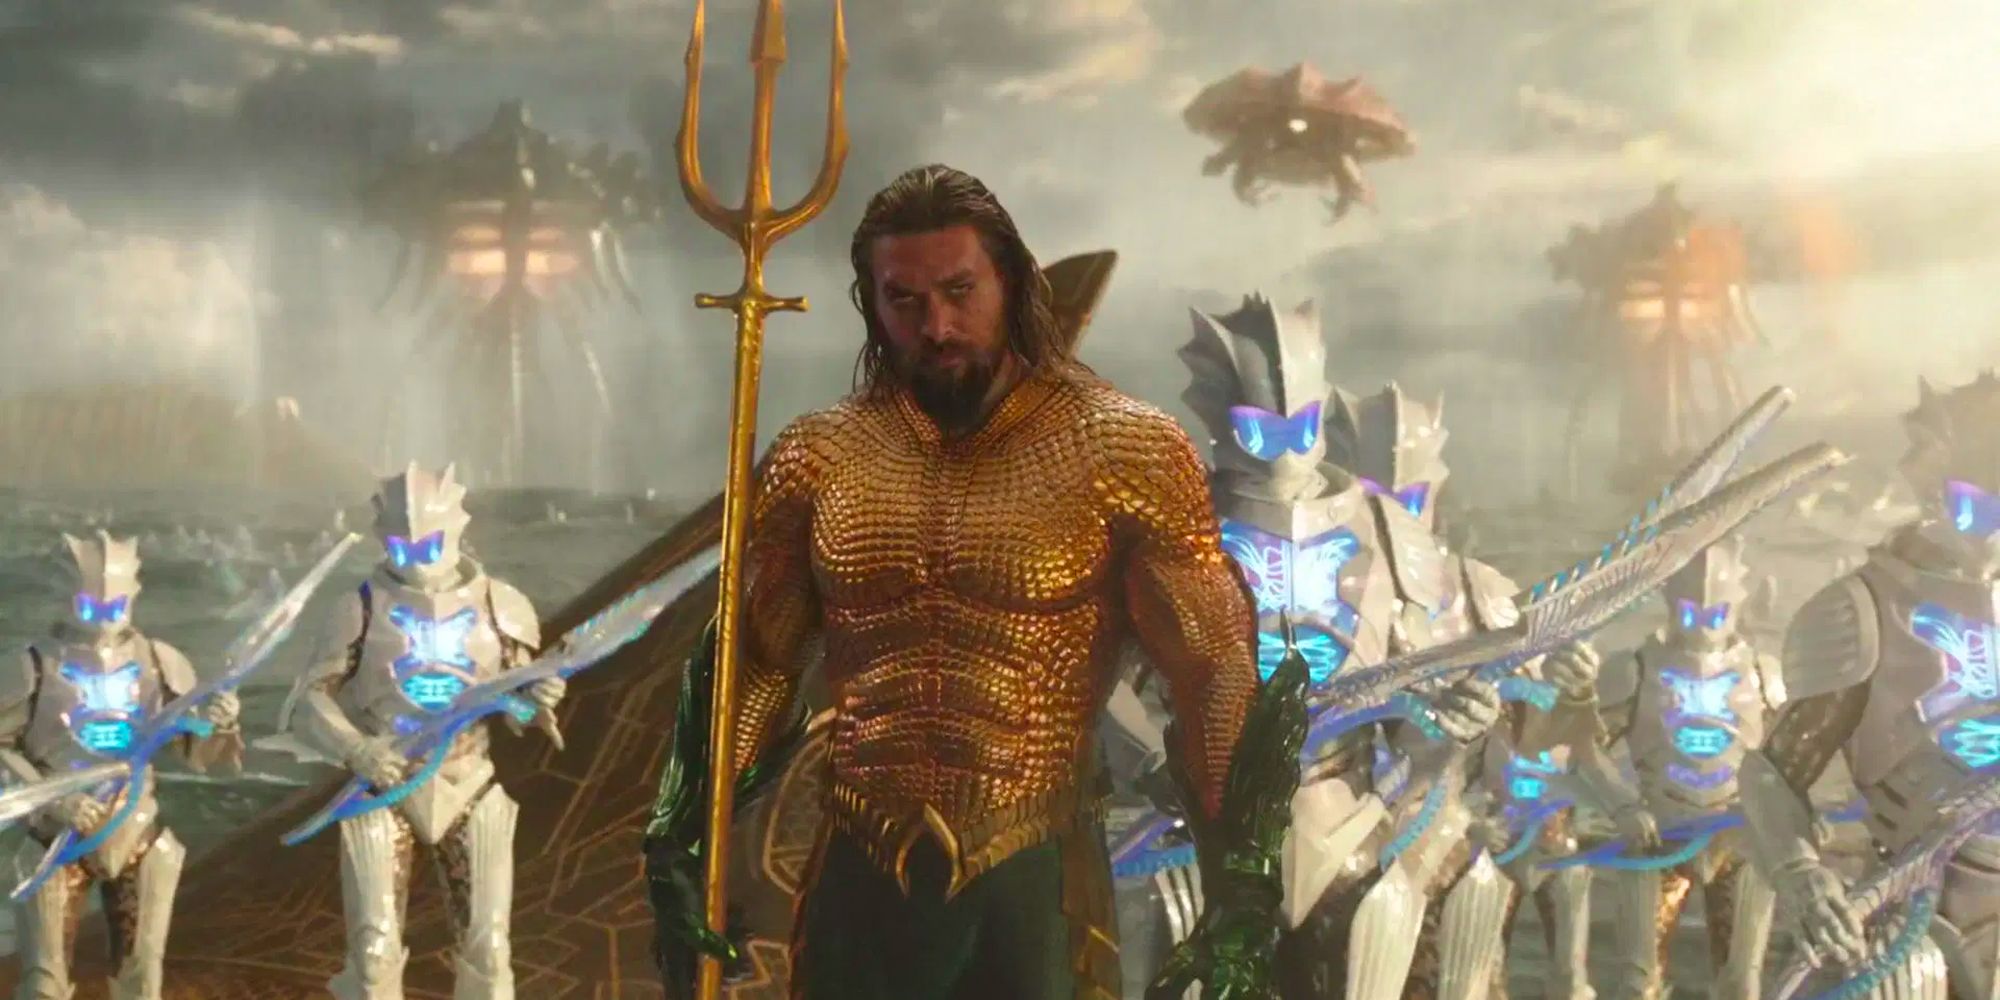 The DCEU iteration of Aquaman comes ashore alongside his Atlantean warriors 